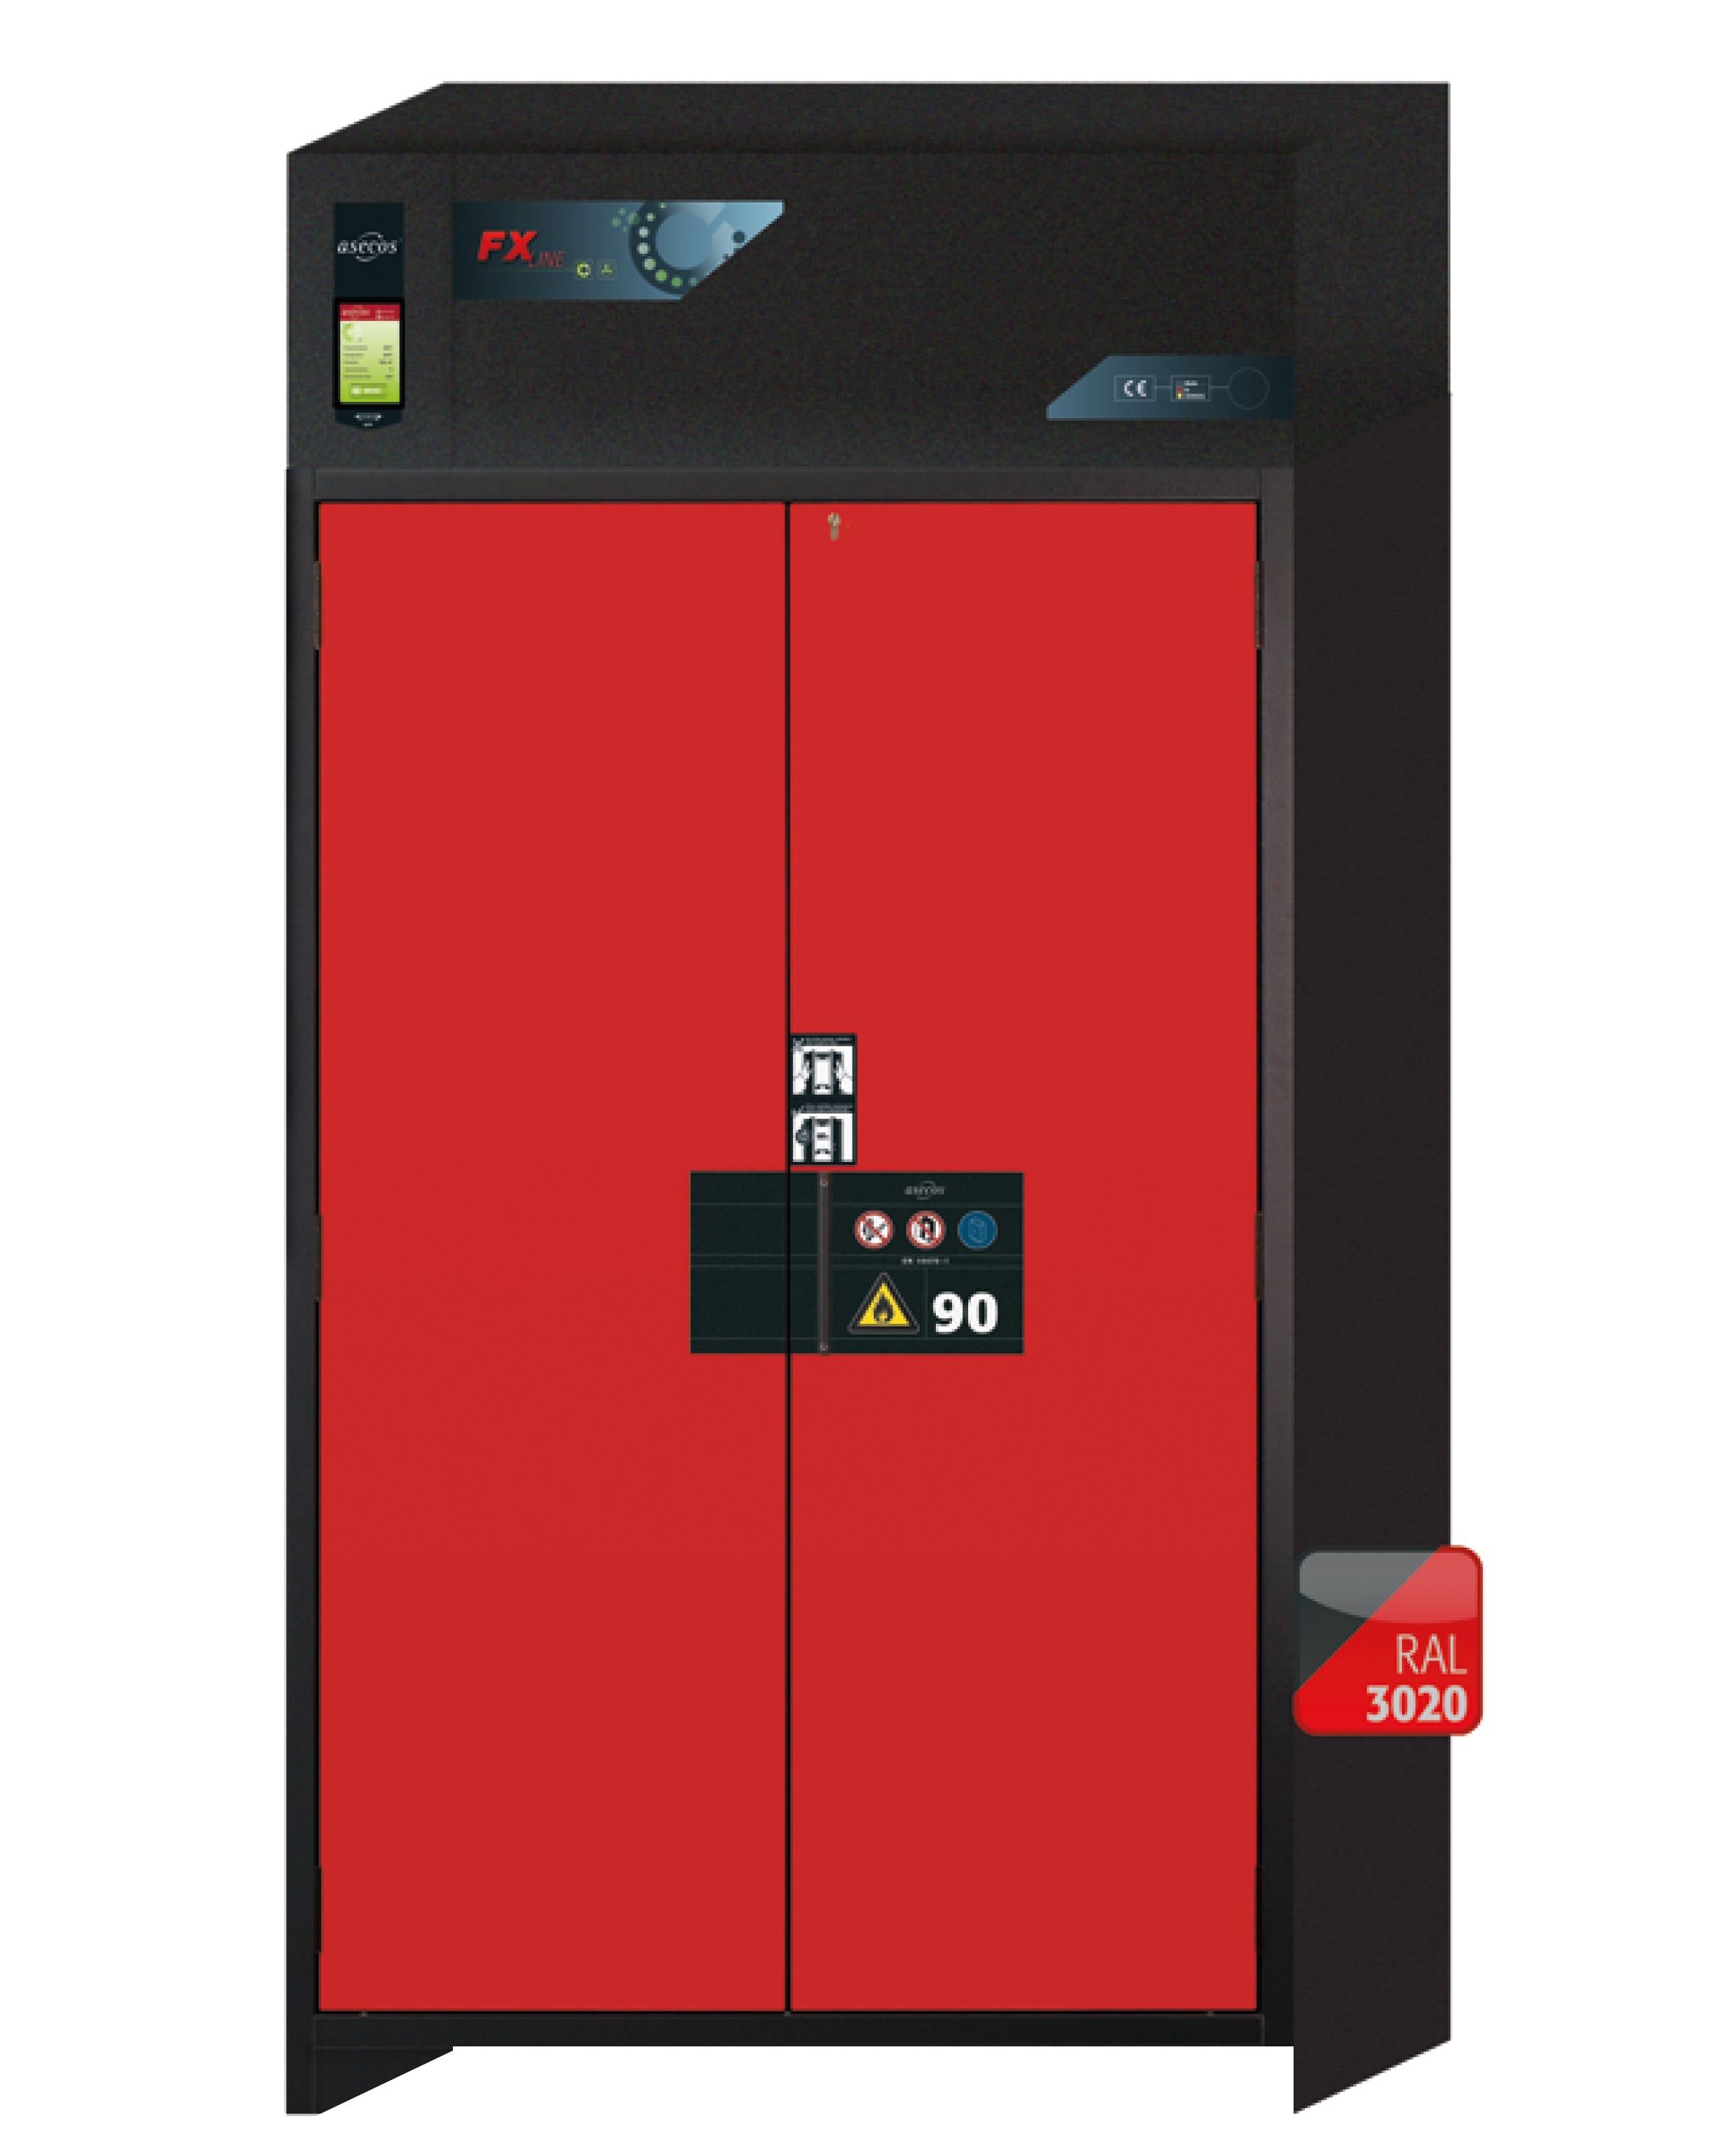 Armoire de filtration d'air recyclé type 90 FX-PEGASUS-90 modèle FX90.229.120.WDAC en rouge signalisation RAL 3020 avec 2 plateaux coulissants standard (acier inoxydable 1.4301)